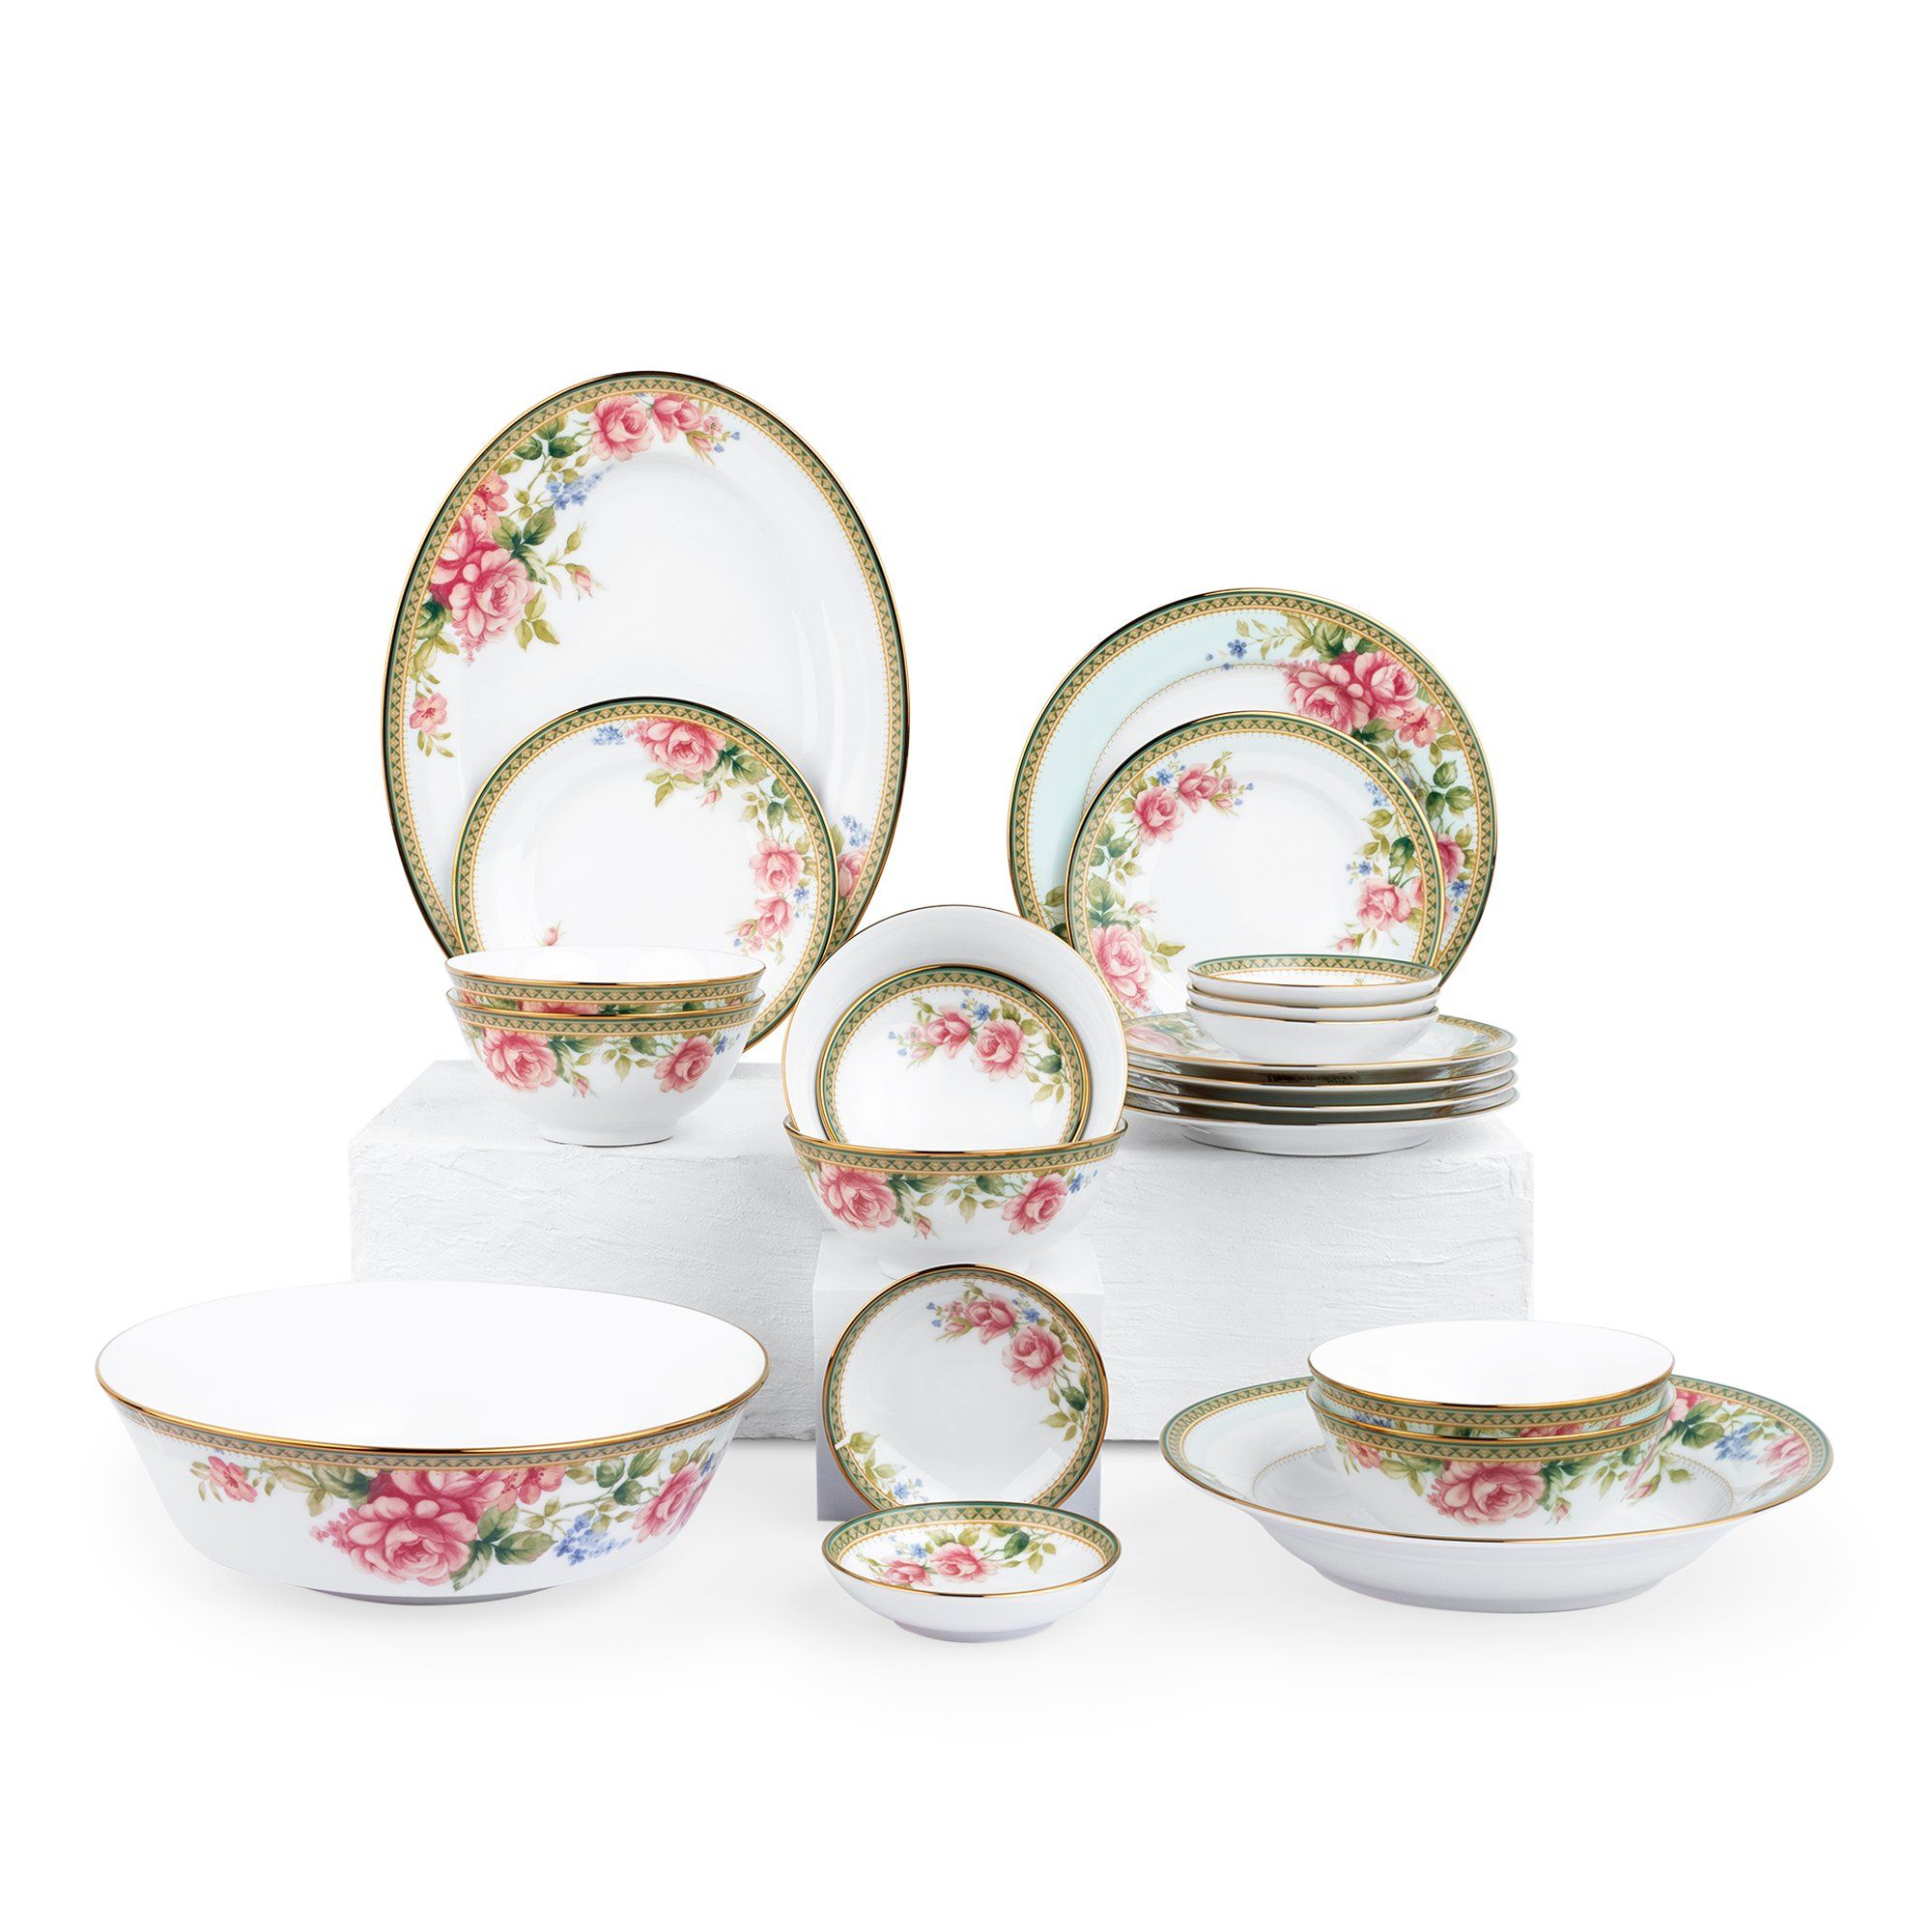  Bộ bát đĩa ăn Châu Á cơ bản 22 món sứ trắng | Rosa Basket 1736 